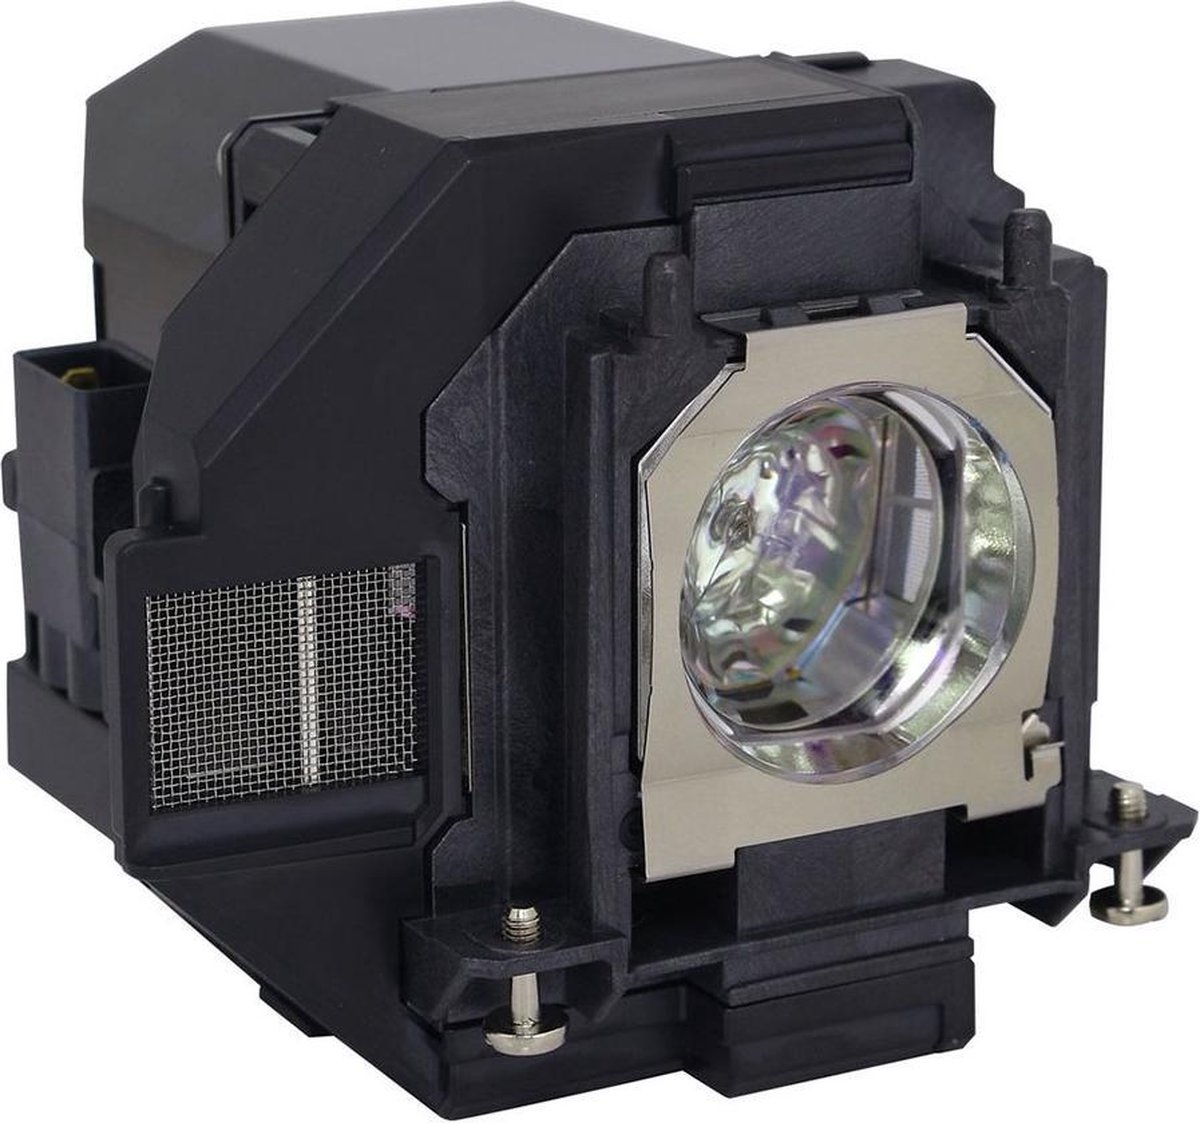 Beamerlamp geschikt voor de EPSON EH-TW610 beamer, lamp code LP96 / V13H010L96. Bevat originele UHP lamp, prestaties gelijk aan origineel.